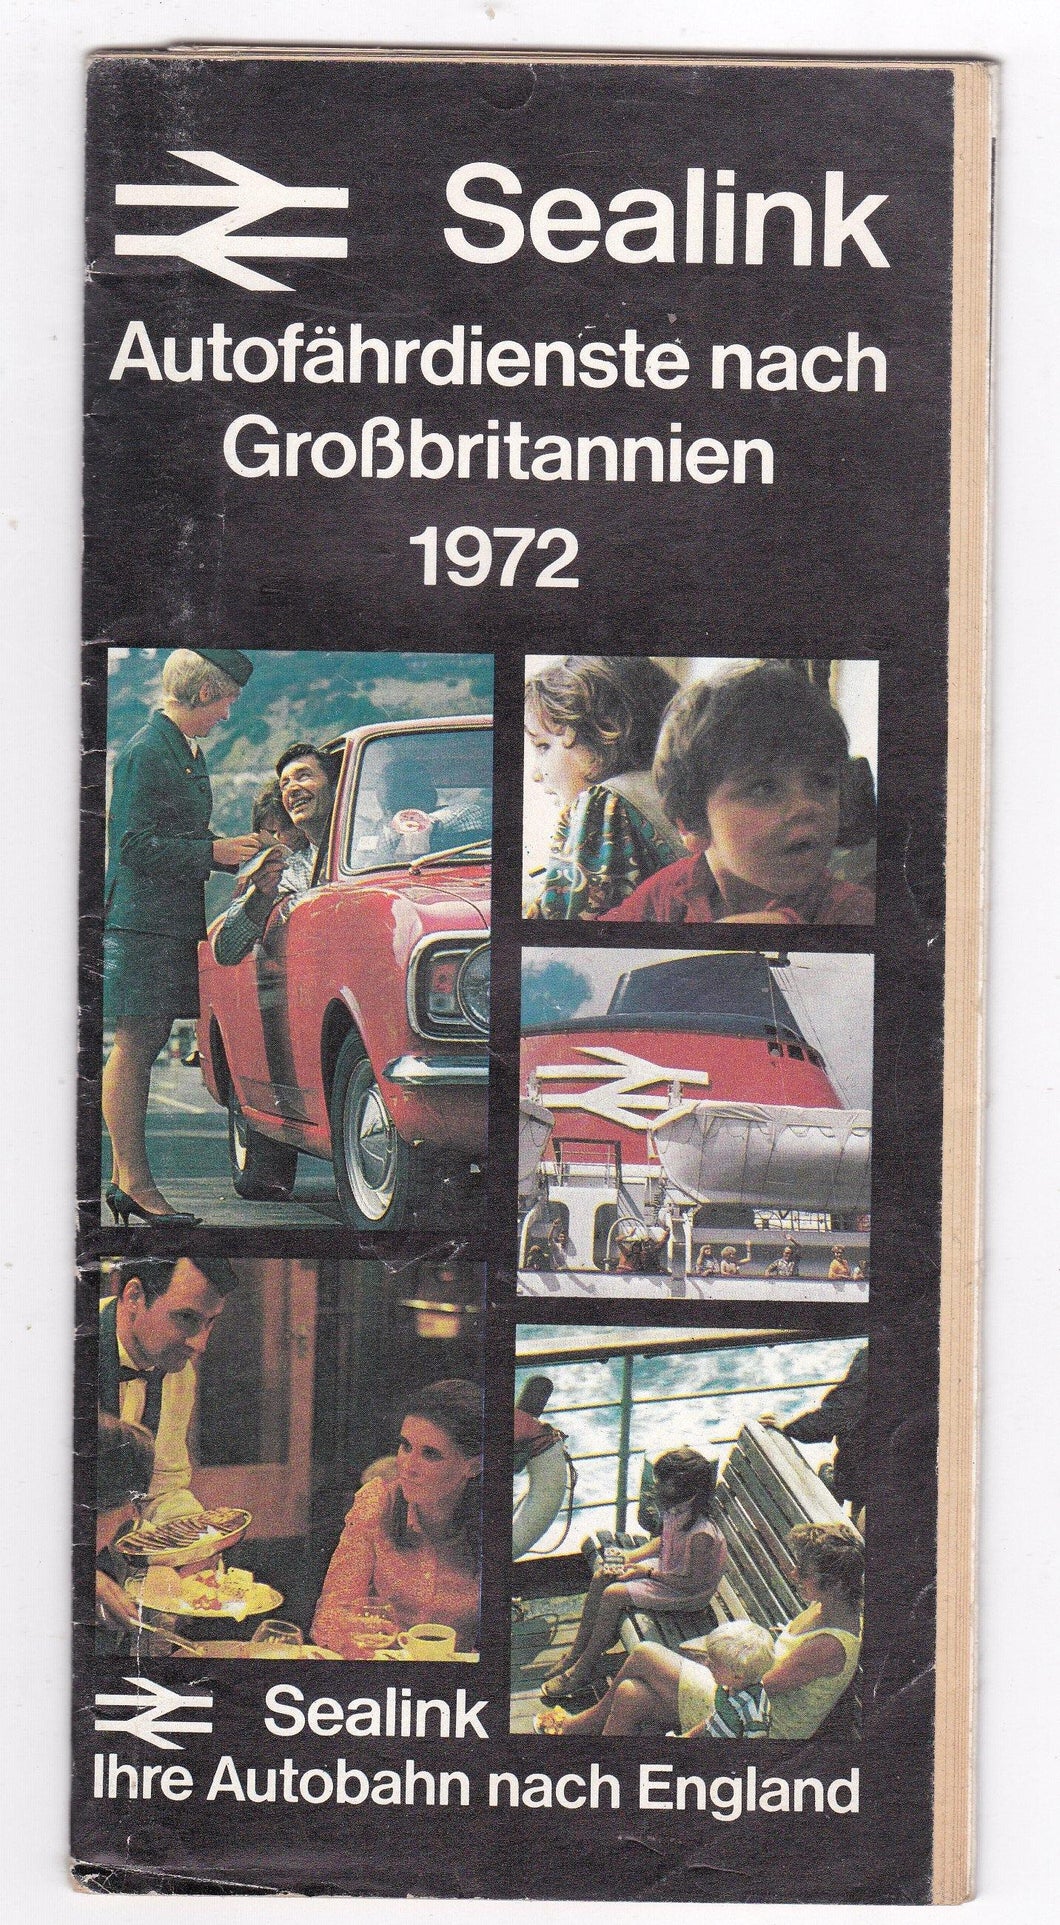 Sealink 1972 Car Ferry Autobahn Nach England Schedules German Brochure - TulipStuff